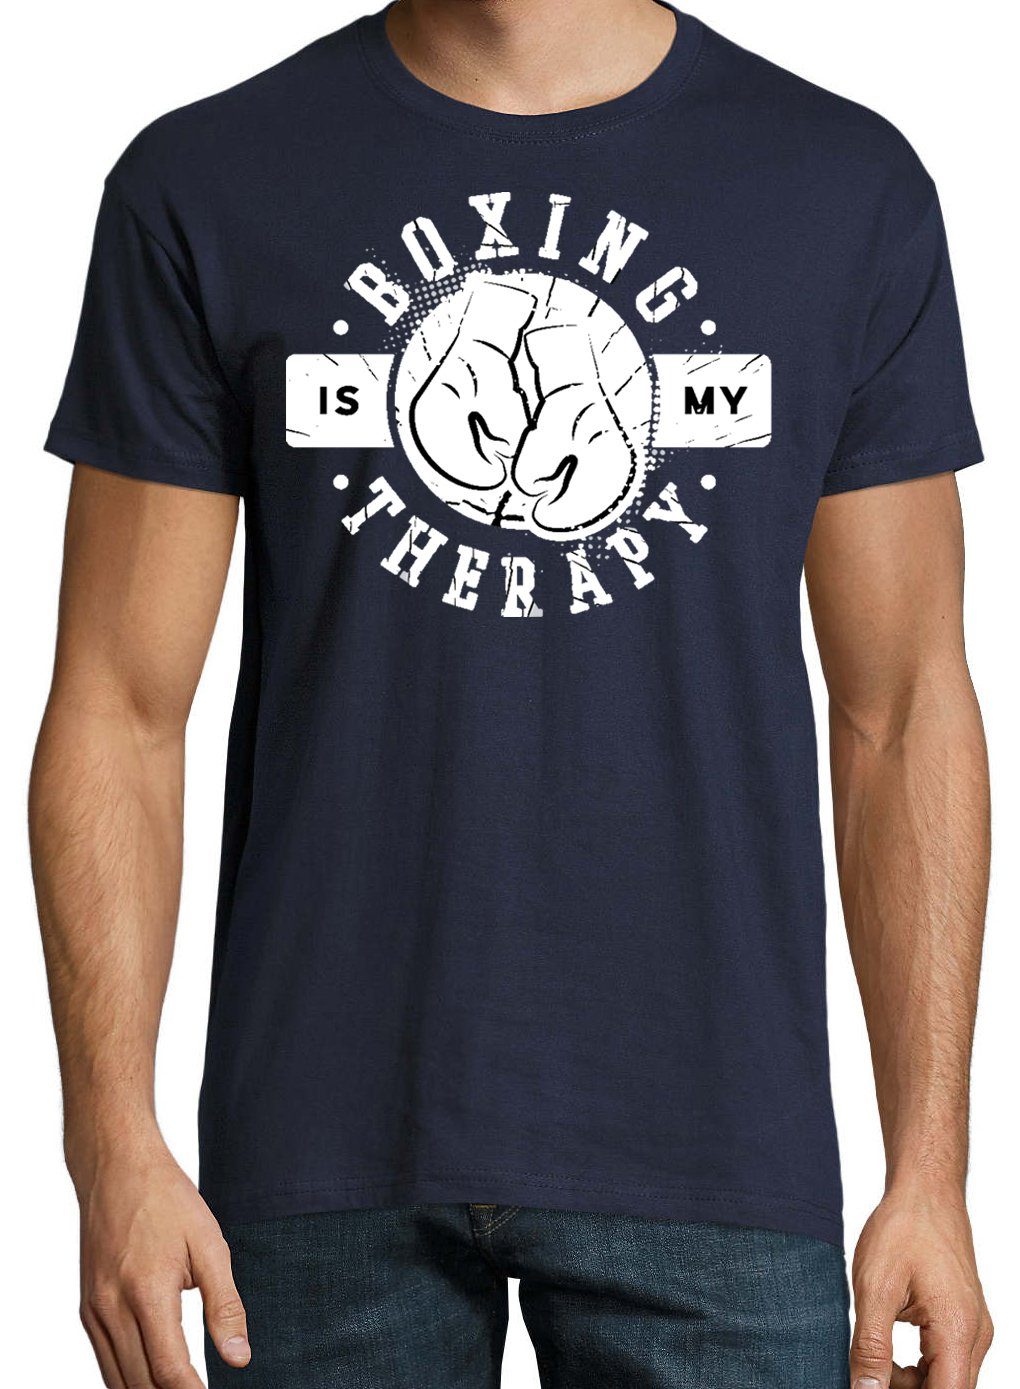 Frontprint mit T-Shirt Youth My trendigem Is Therapie Herren Navyblau Designz Boxen Shirt